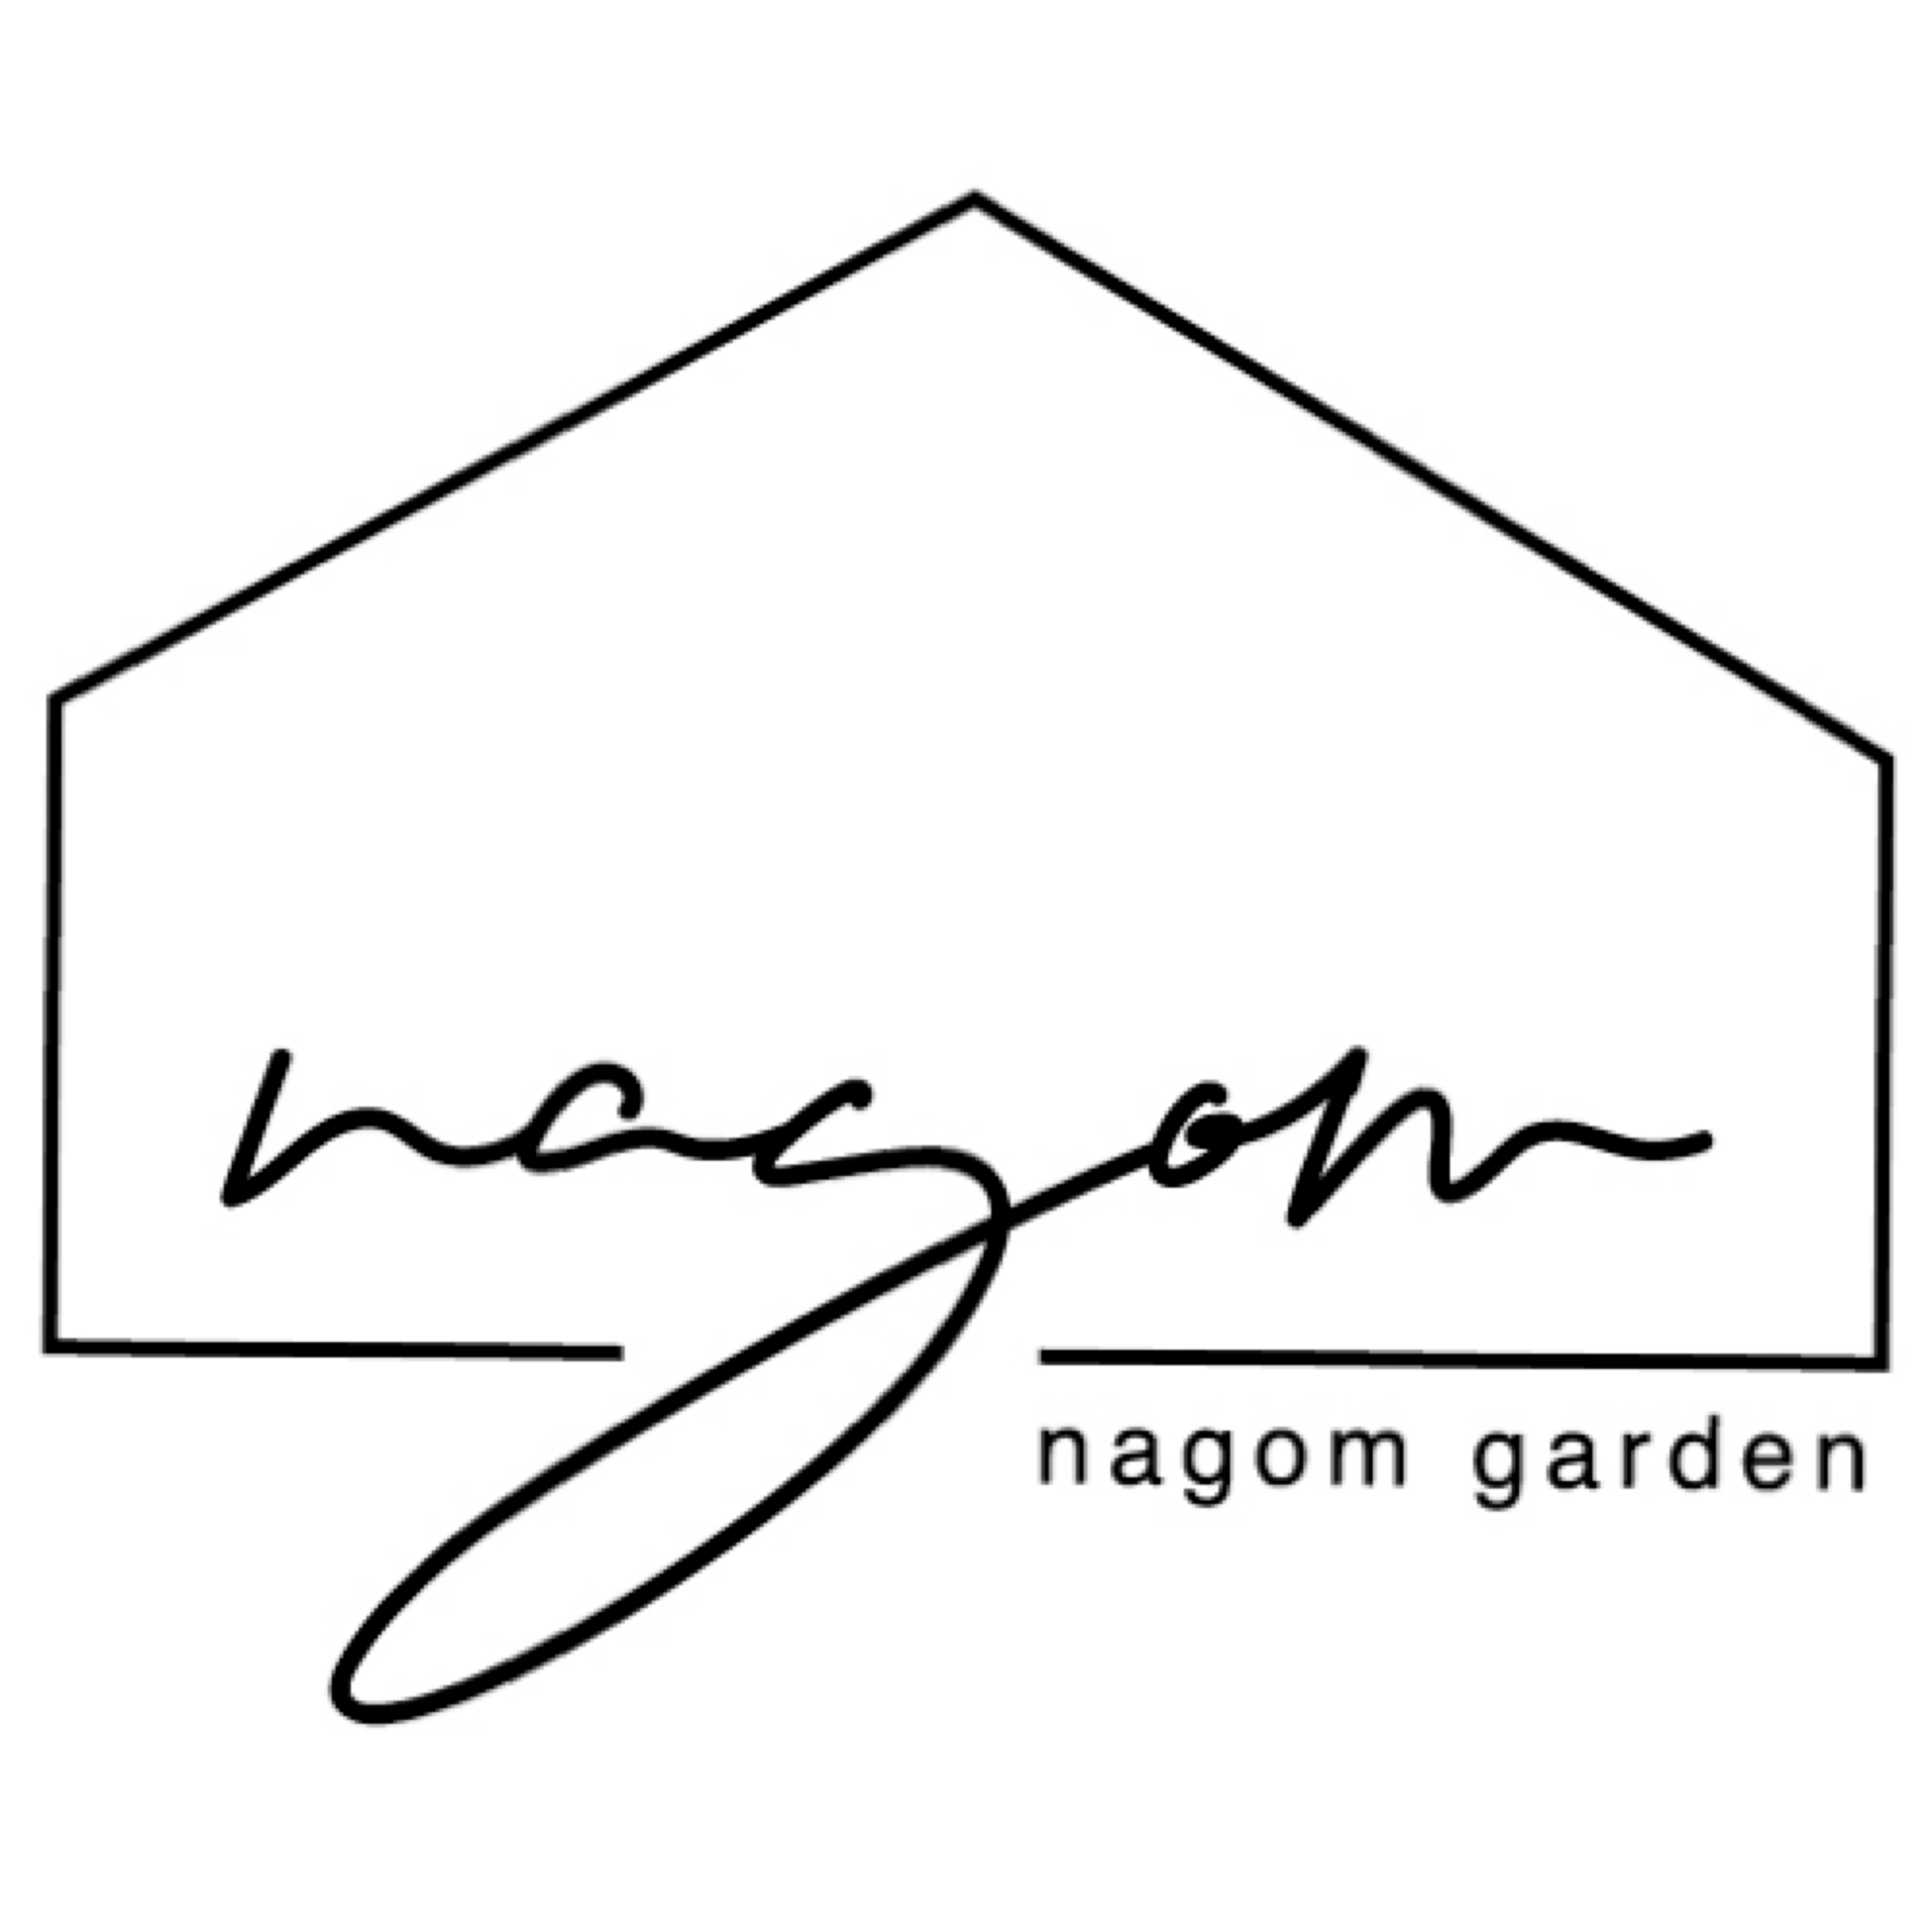 nagom garden